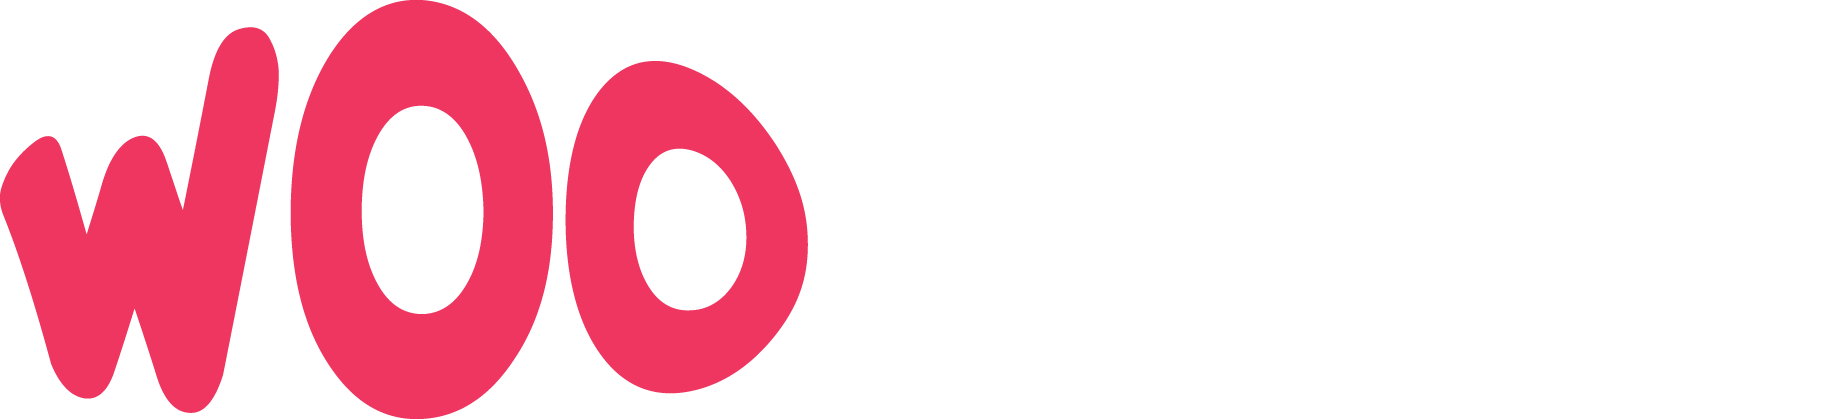 woo casino 2 logo